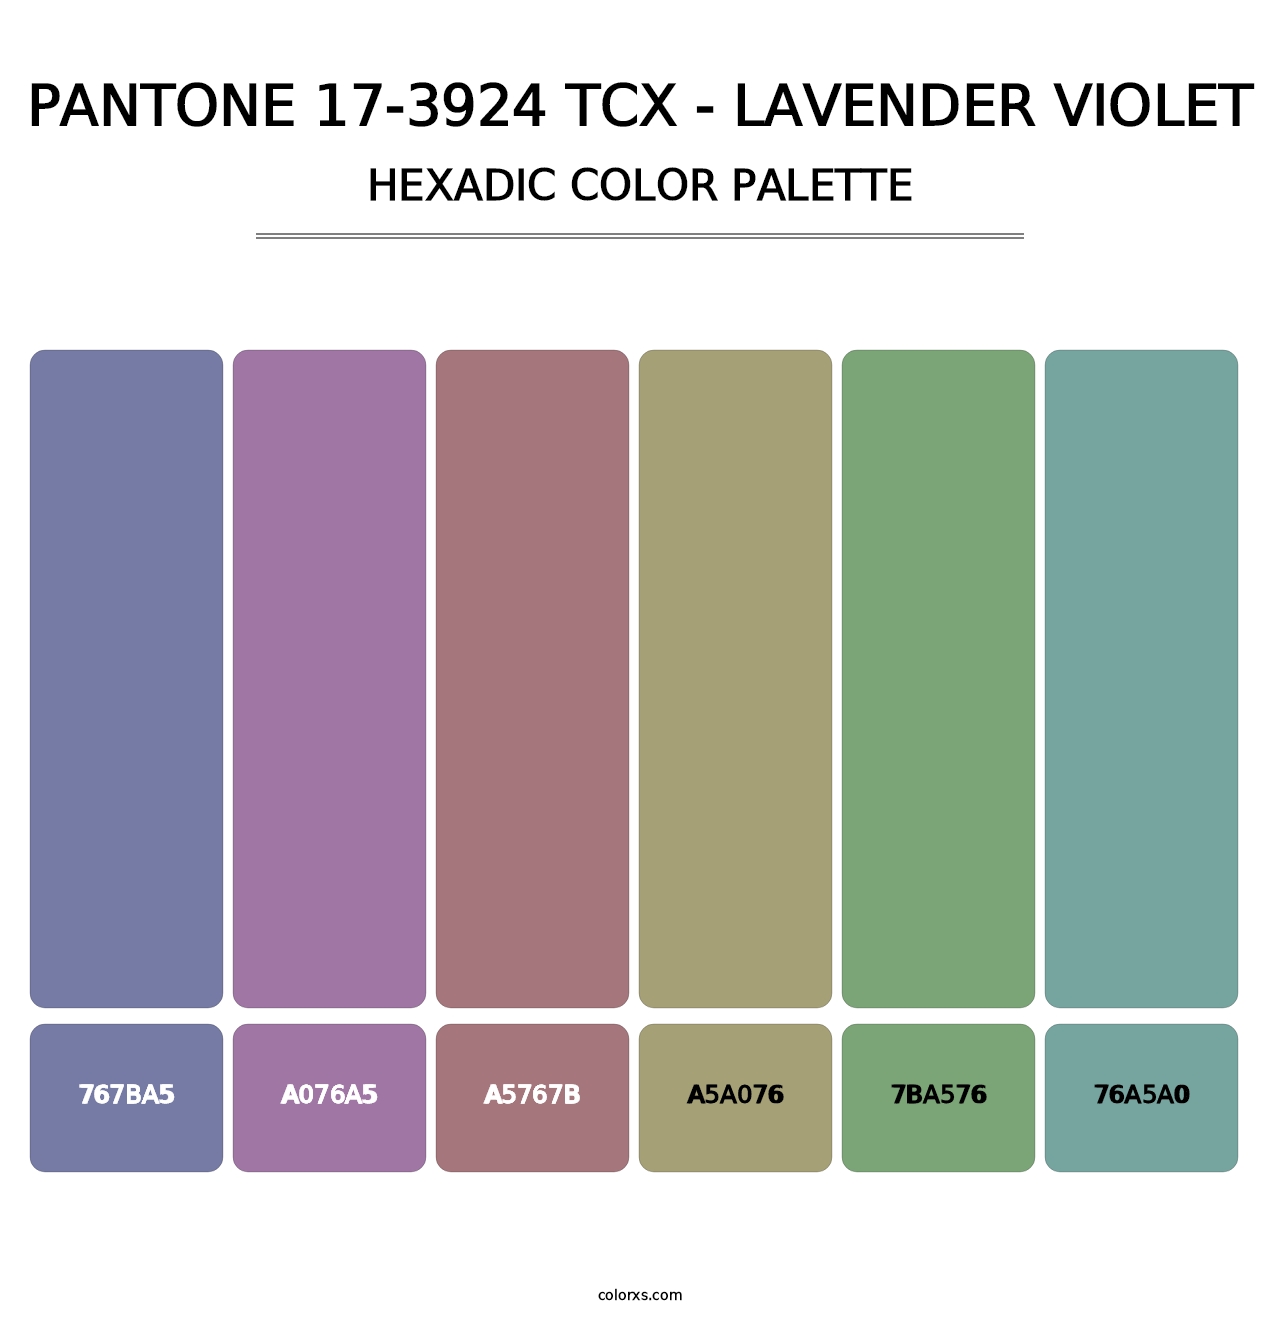 PANTONE 17-3924 TCX - Lavender Violet - Hexadic Color Palette